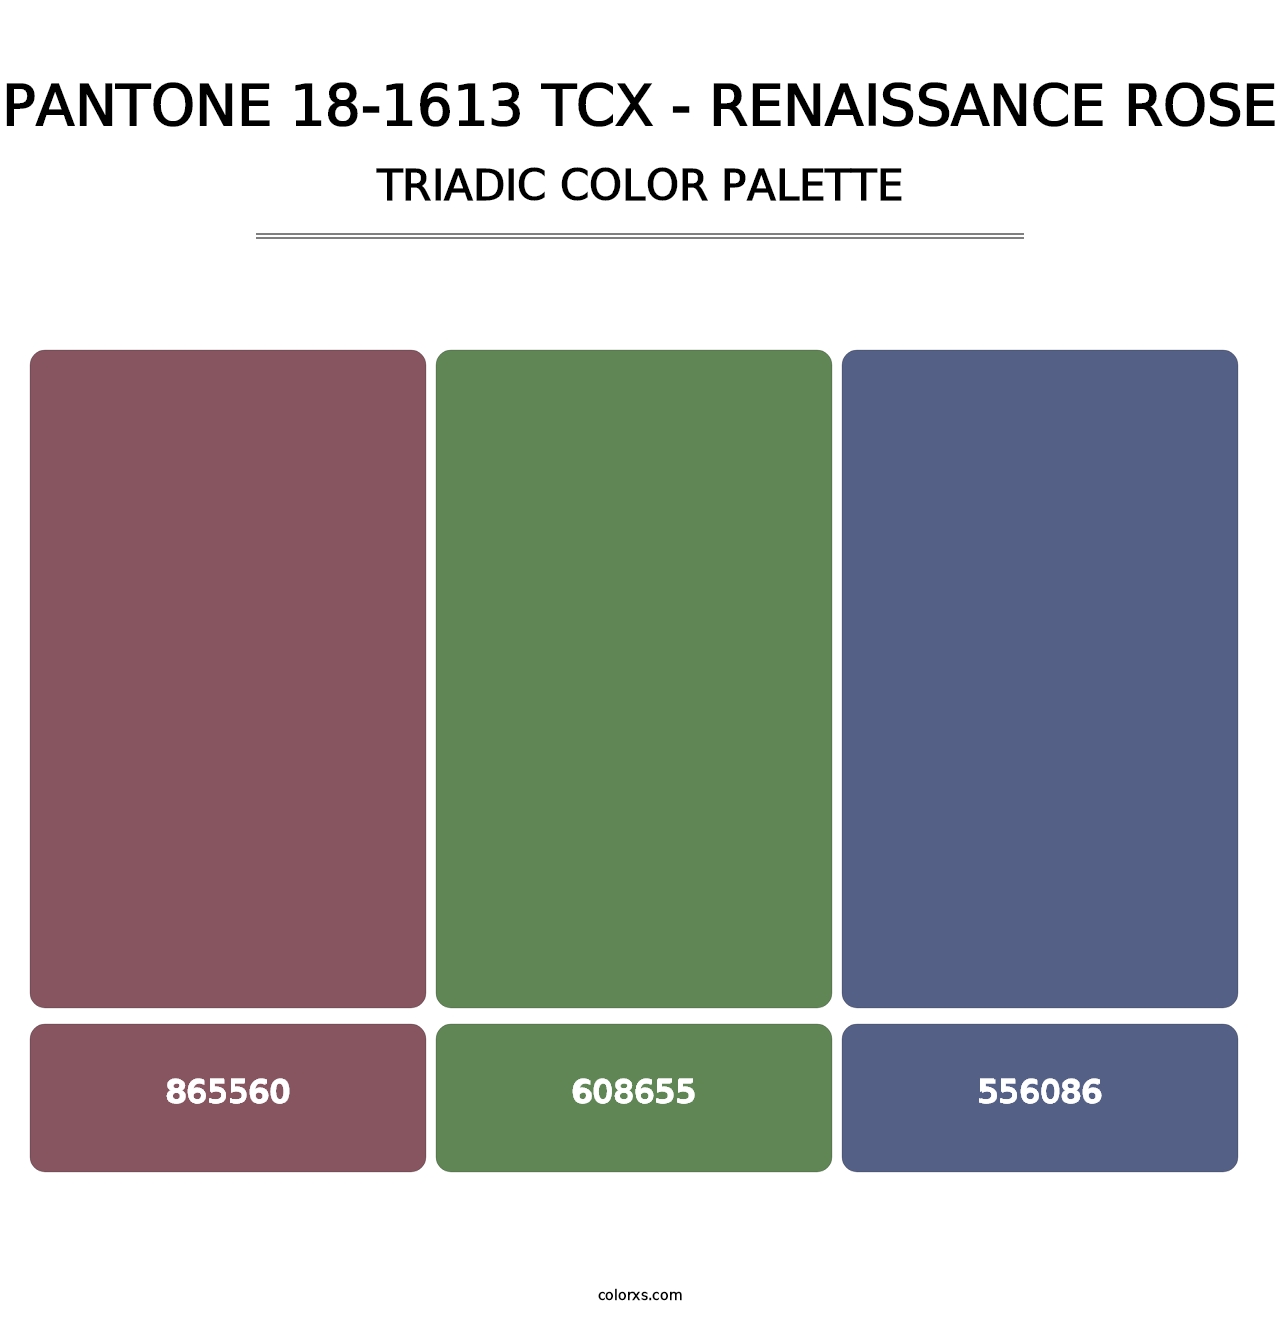 PANTONE 18-1613 TCX - Renaissance Rose - Triadic Color Palette